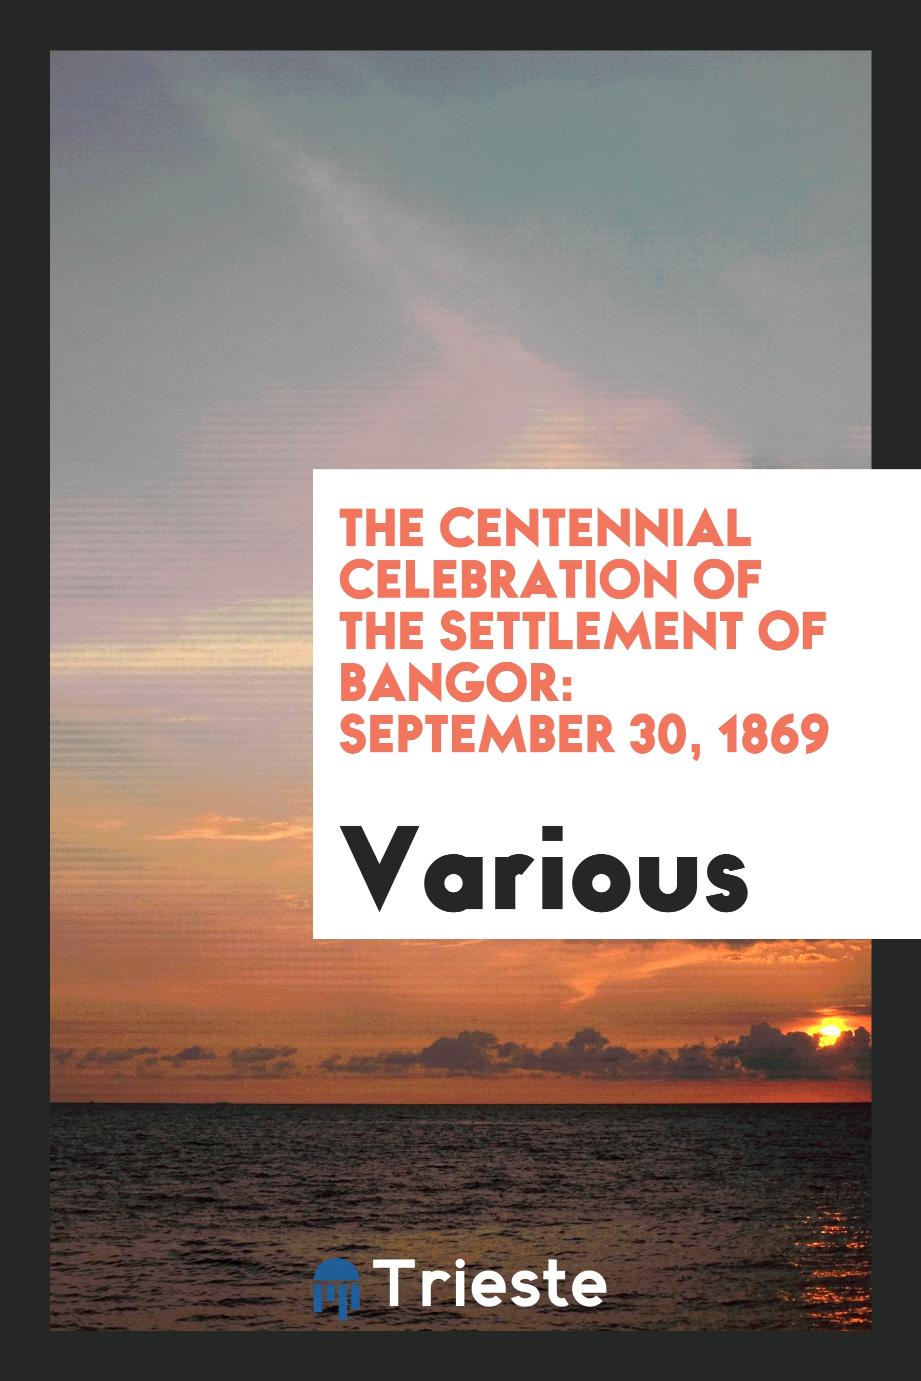 The Centennial Celebration of the Settlement of Bangor: September 30, 1869